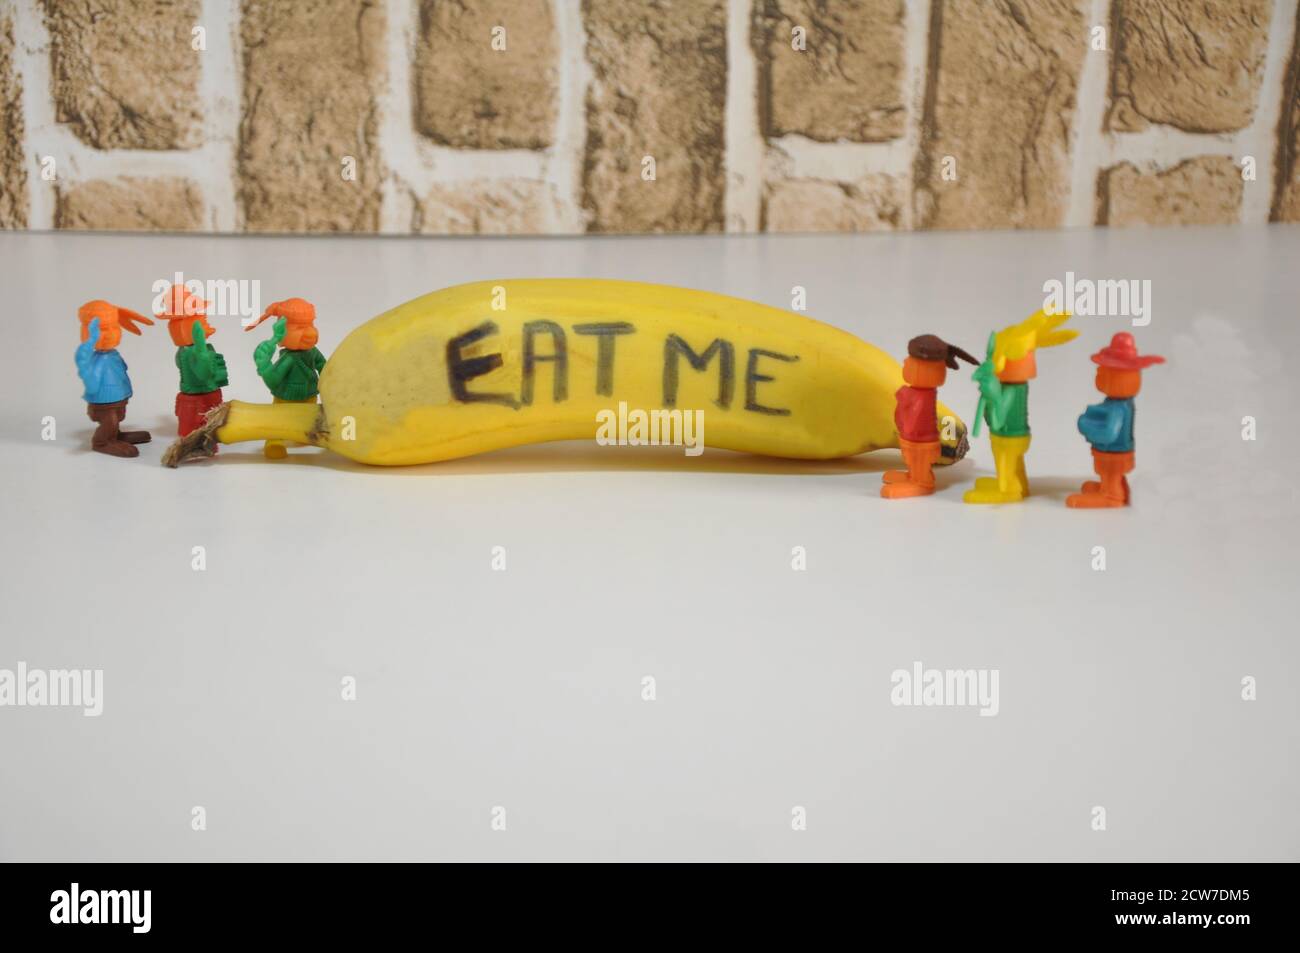 Banane. Obst mit Inschrift, ISS mich, mit Miniatur-Plastikspielzeug, das auf Obst schaut, weißer Sockel, Backsteinwand-Hintergrund, in Konzeptfoto, Brasilien, Stockfoto